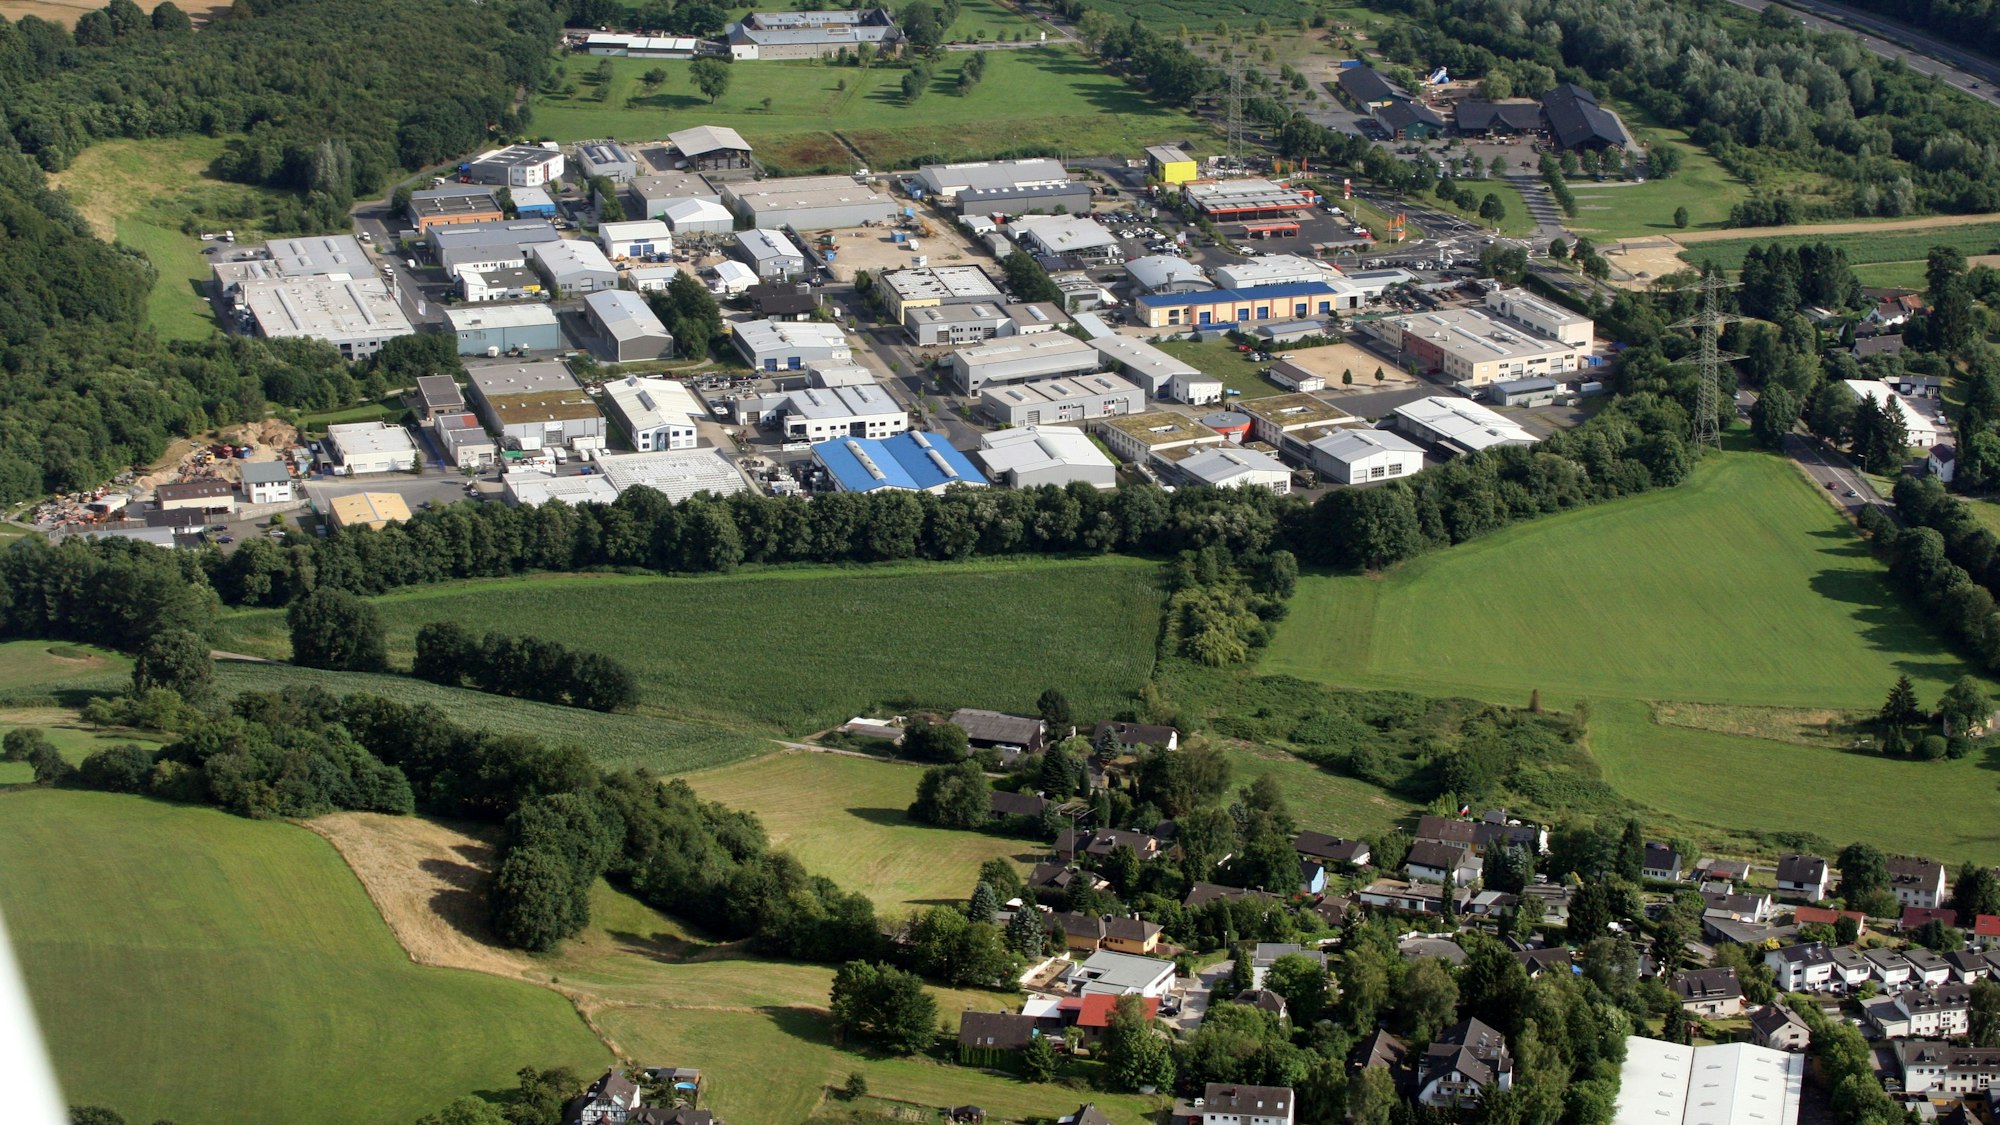 Luftbild der Grünfläche zwischen Lohmar und Rösrath, auf der ein nachhaltiges Gewerbegebiet entstehen soll.